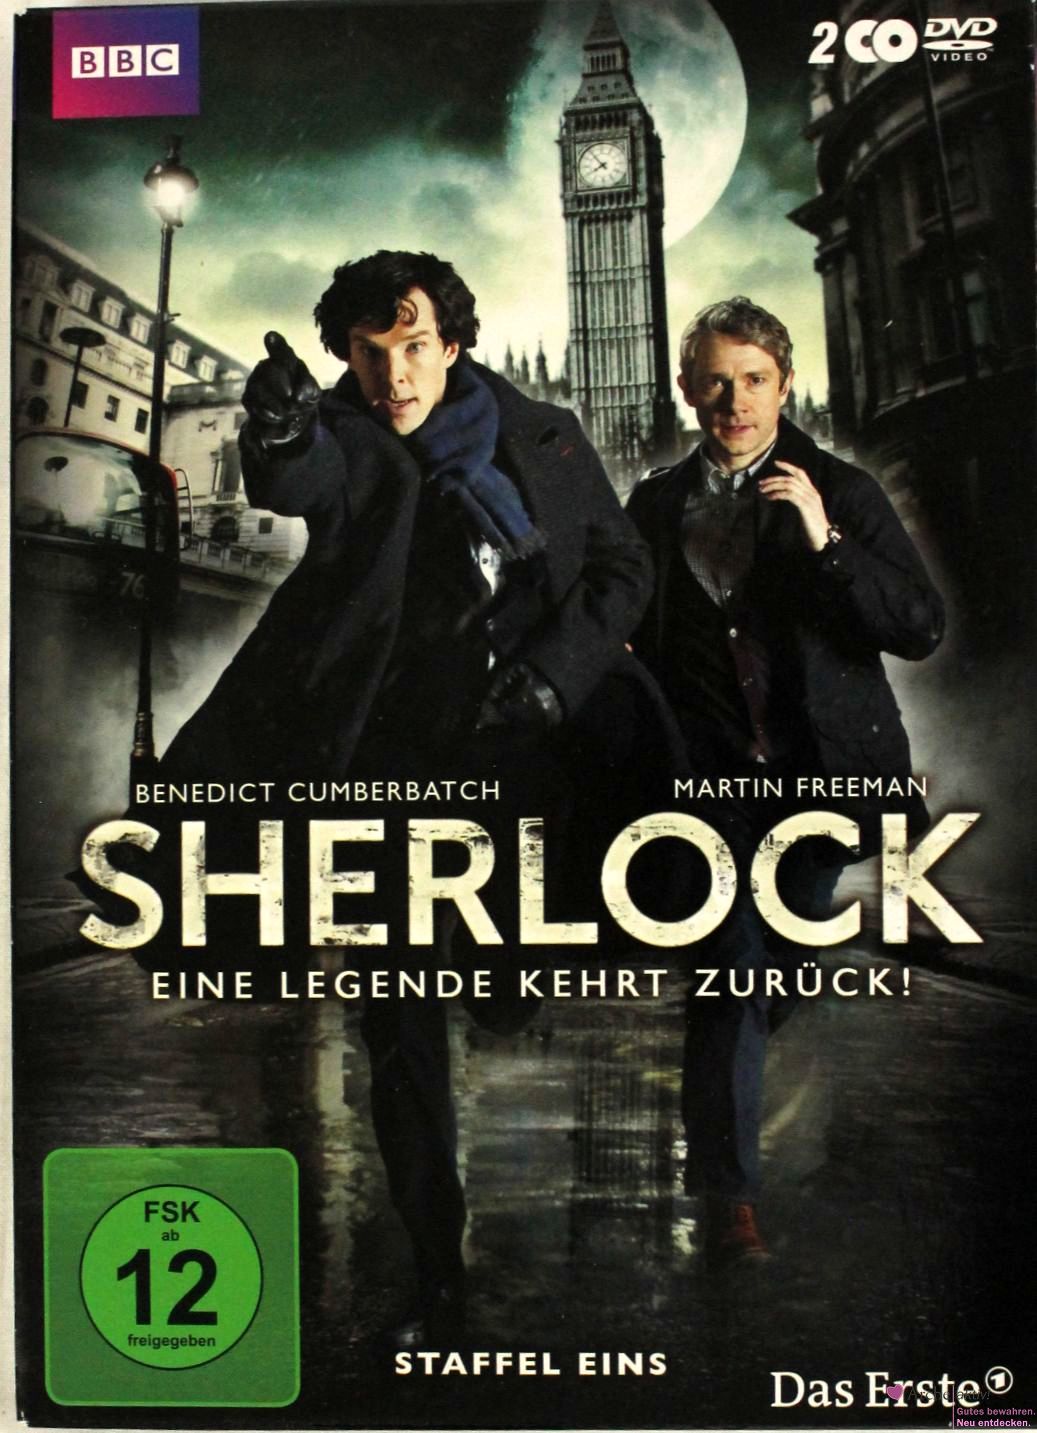 Sherlock - Eine Legende kehrt zurück! - Staffel 1, gebr.